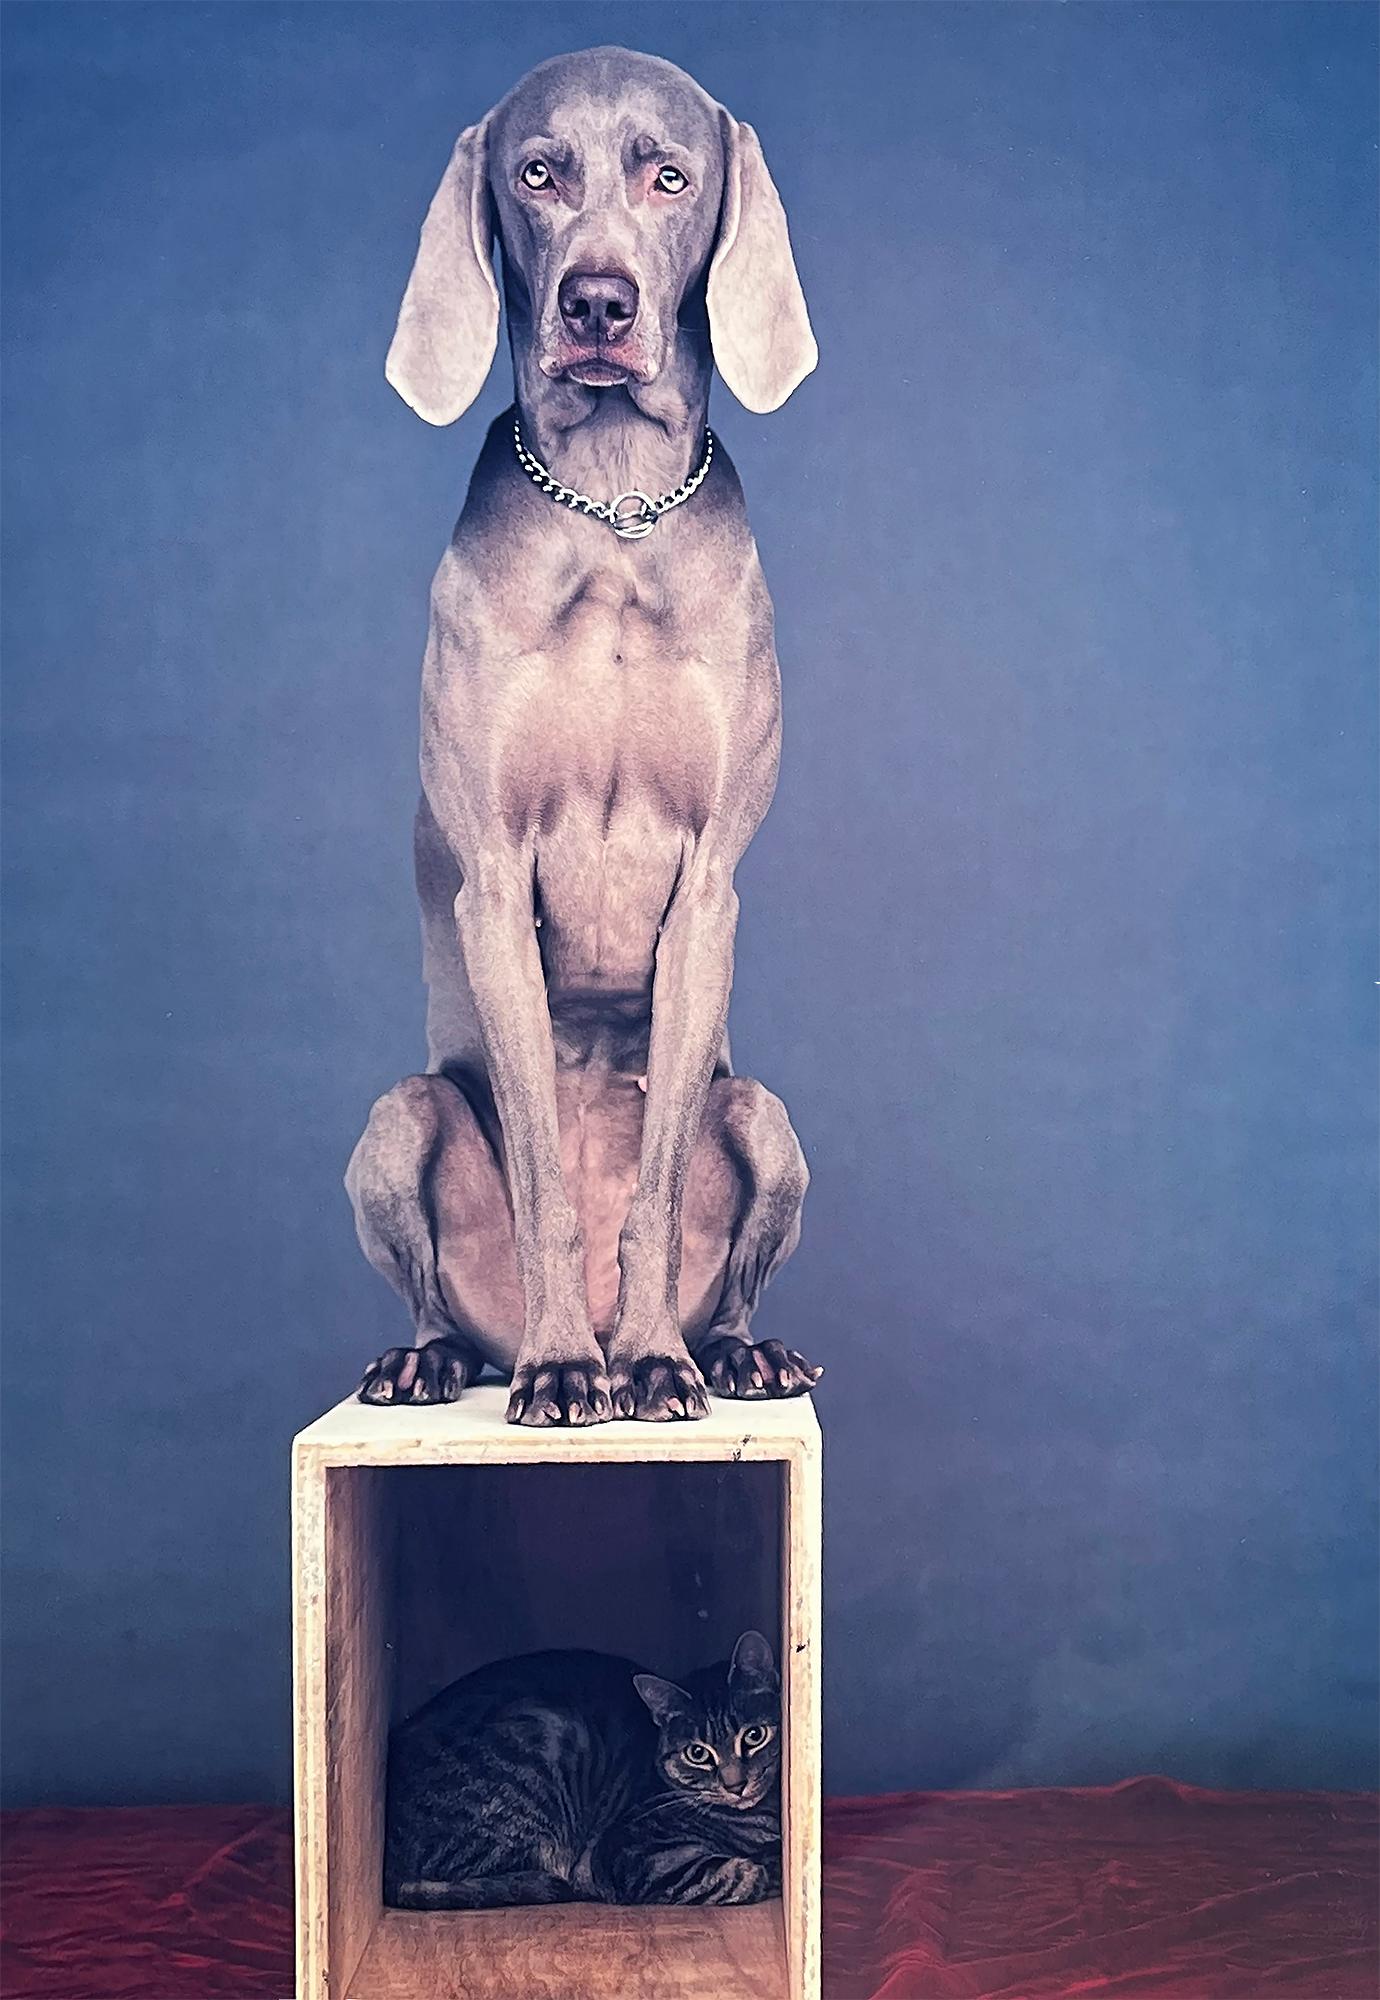 William Wegmans höchst konzeptionelle Hund-Katze-Interaktion wird in diesem großformatigen Polaroid-Polacolor-Druck dargestellt, der ein Doppelporträt zeigt - einen Hund und eine Katze - zusammen, aber getrennt in ihrem eigenen definierten Raum.